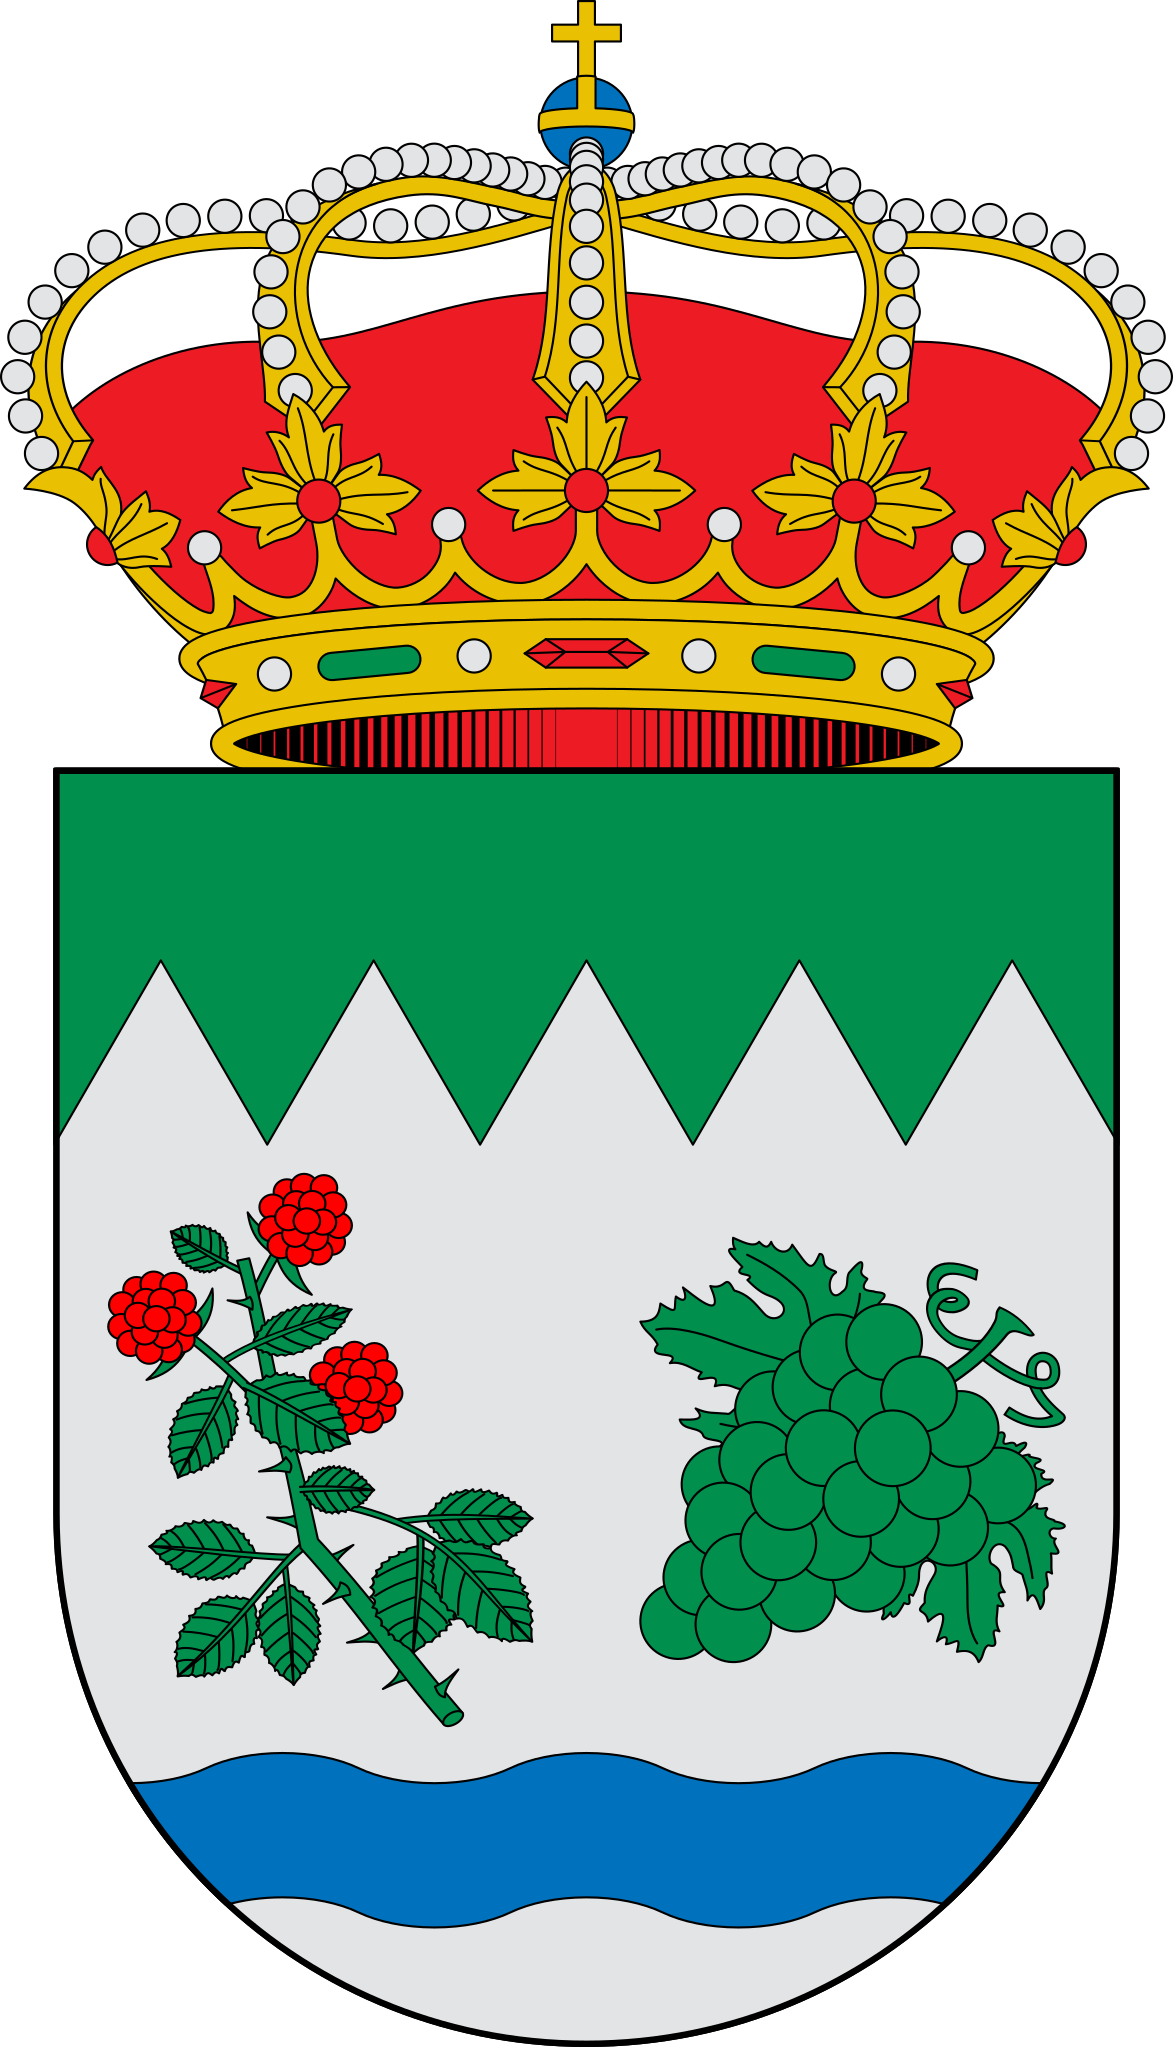 Escudo_de_Rubite_(Granada).svg